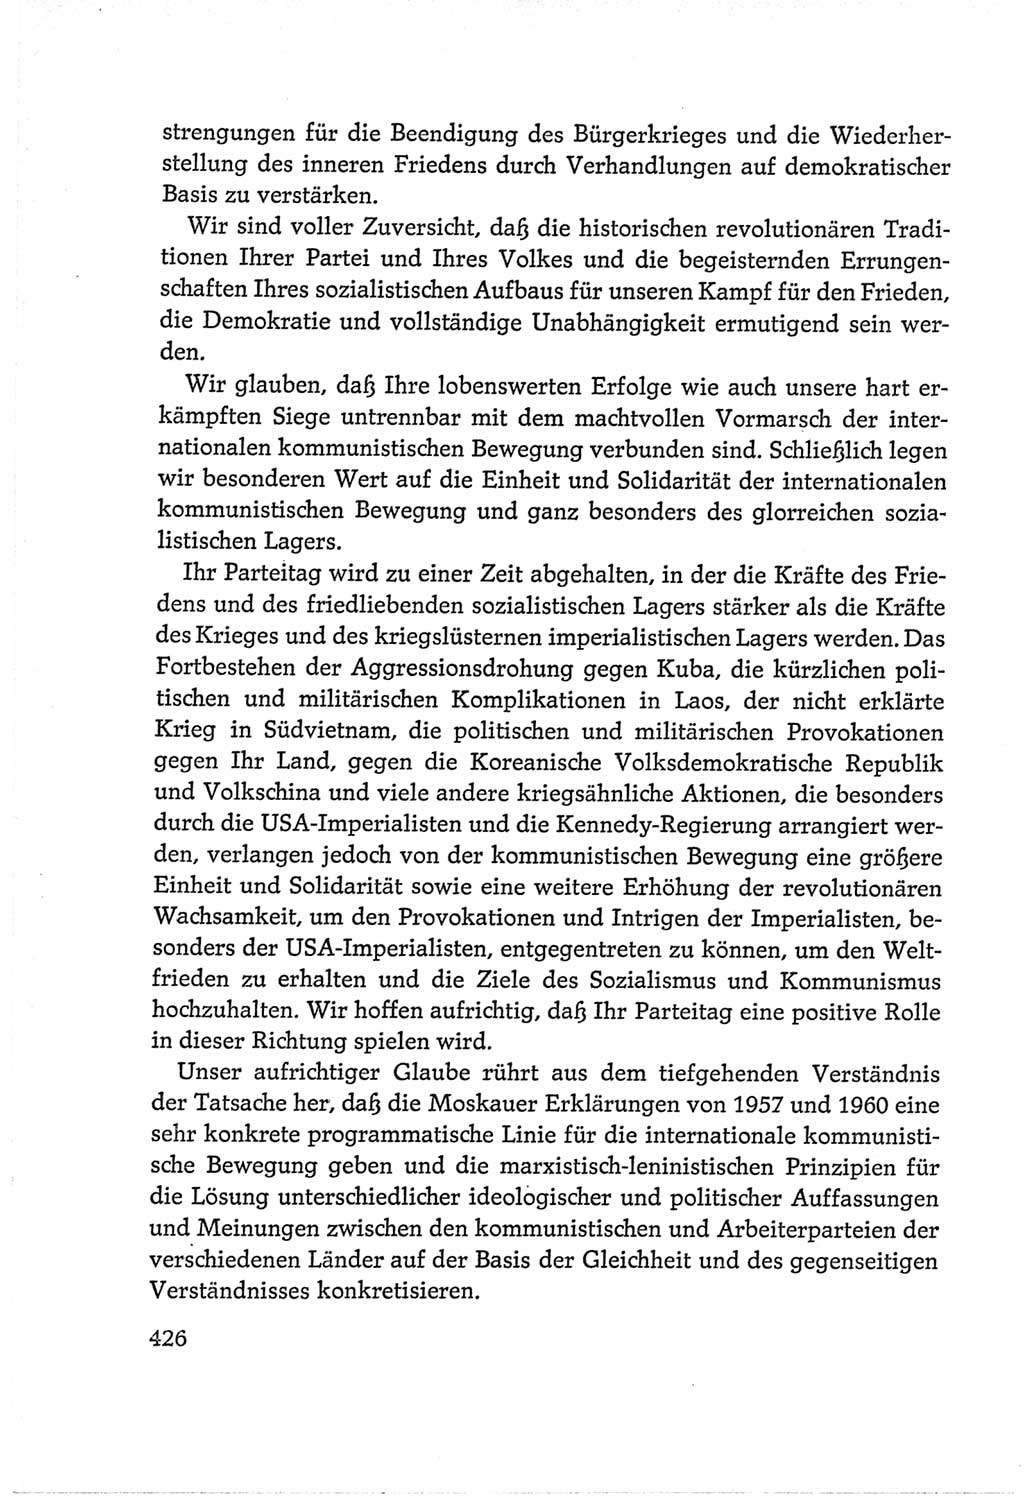 Protokoll der Verhandlungen des Ⅵ. Parteitages der Sozialistischen Einheitspartei Deutschlands (SED) [Deutsche Demokratische Republik (DDR)] 1963, Band Ⅱ, Seite 426 (Prot. Verh. Ⅵ. PT SED DDR 1963, Bd. Ⅱ, S. 426)